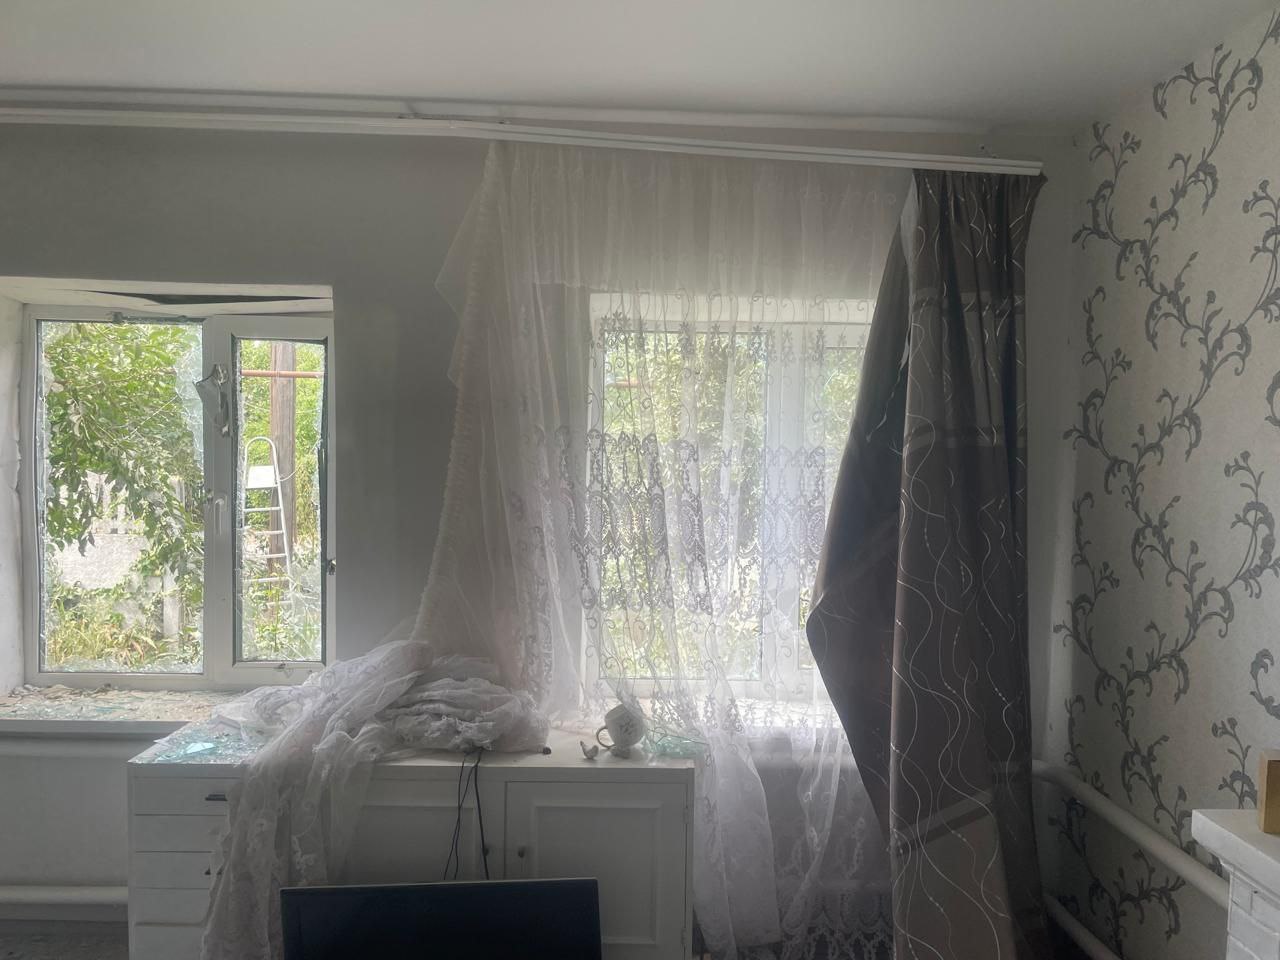 Кімната в будинку після ворожої атаки: розбиті вікна, обірвані штори